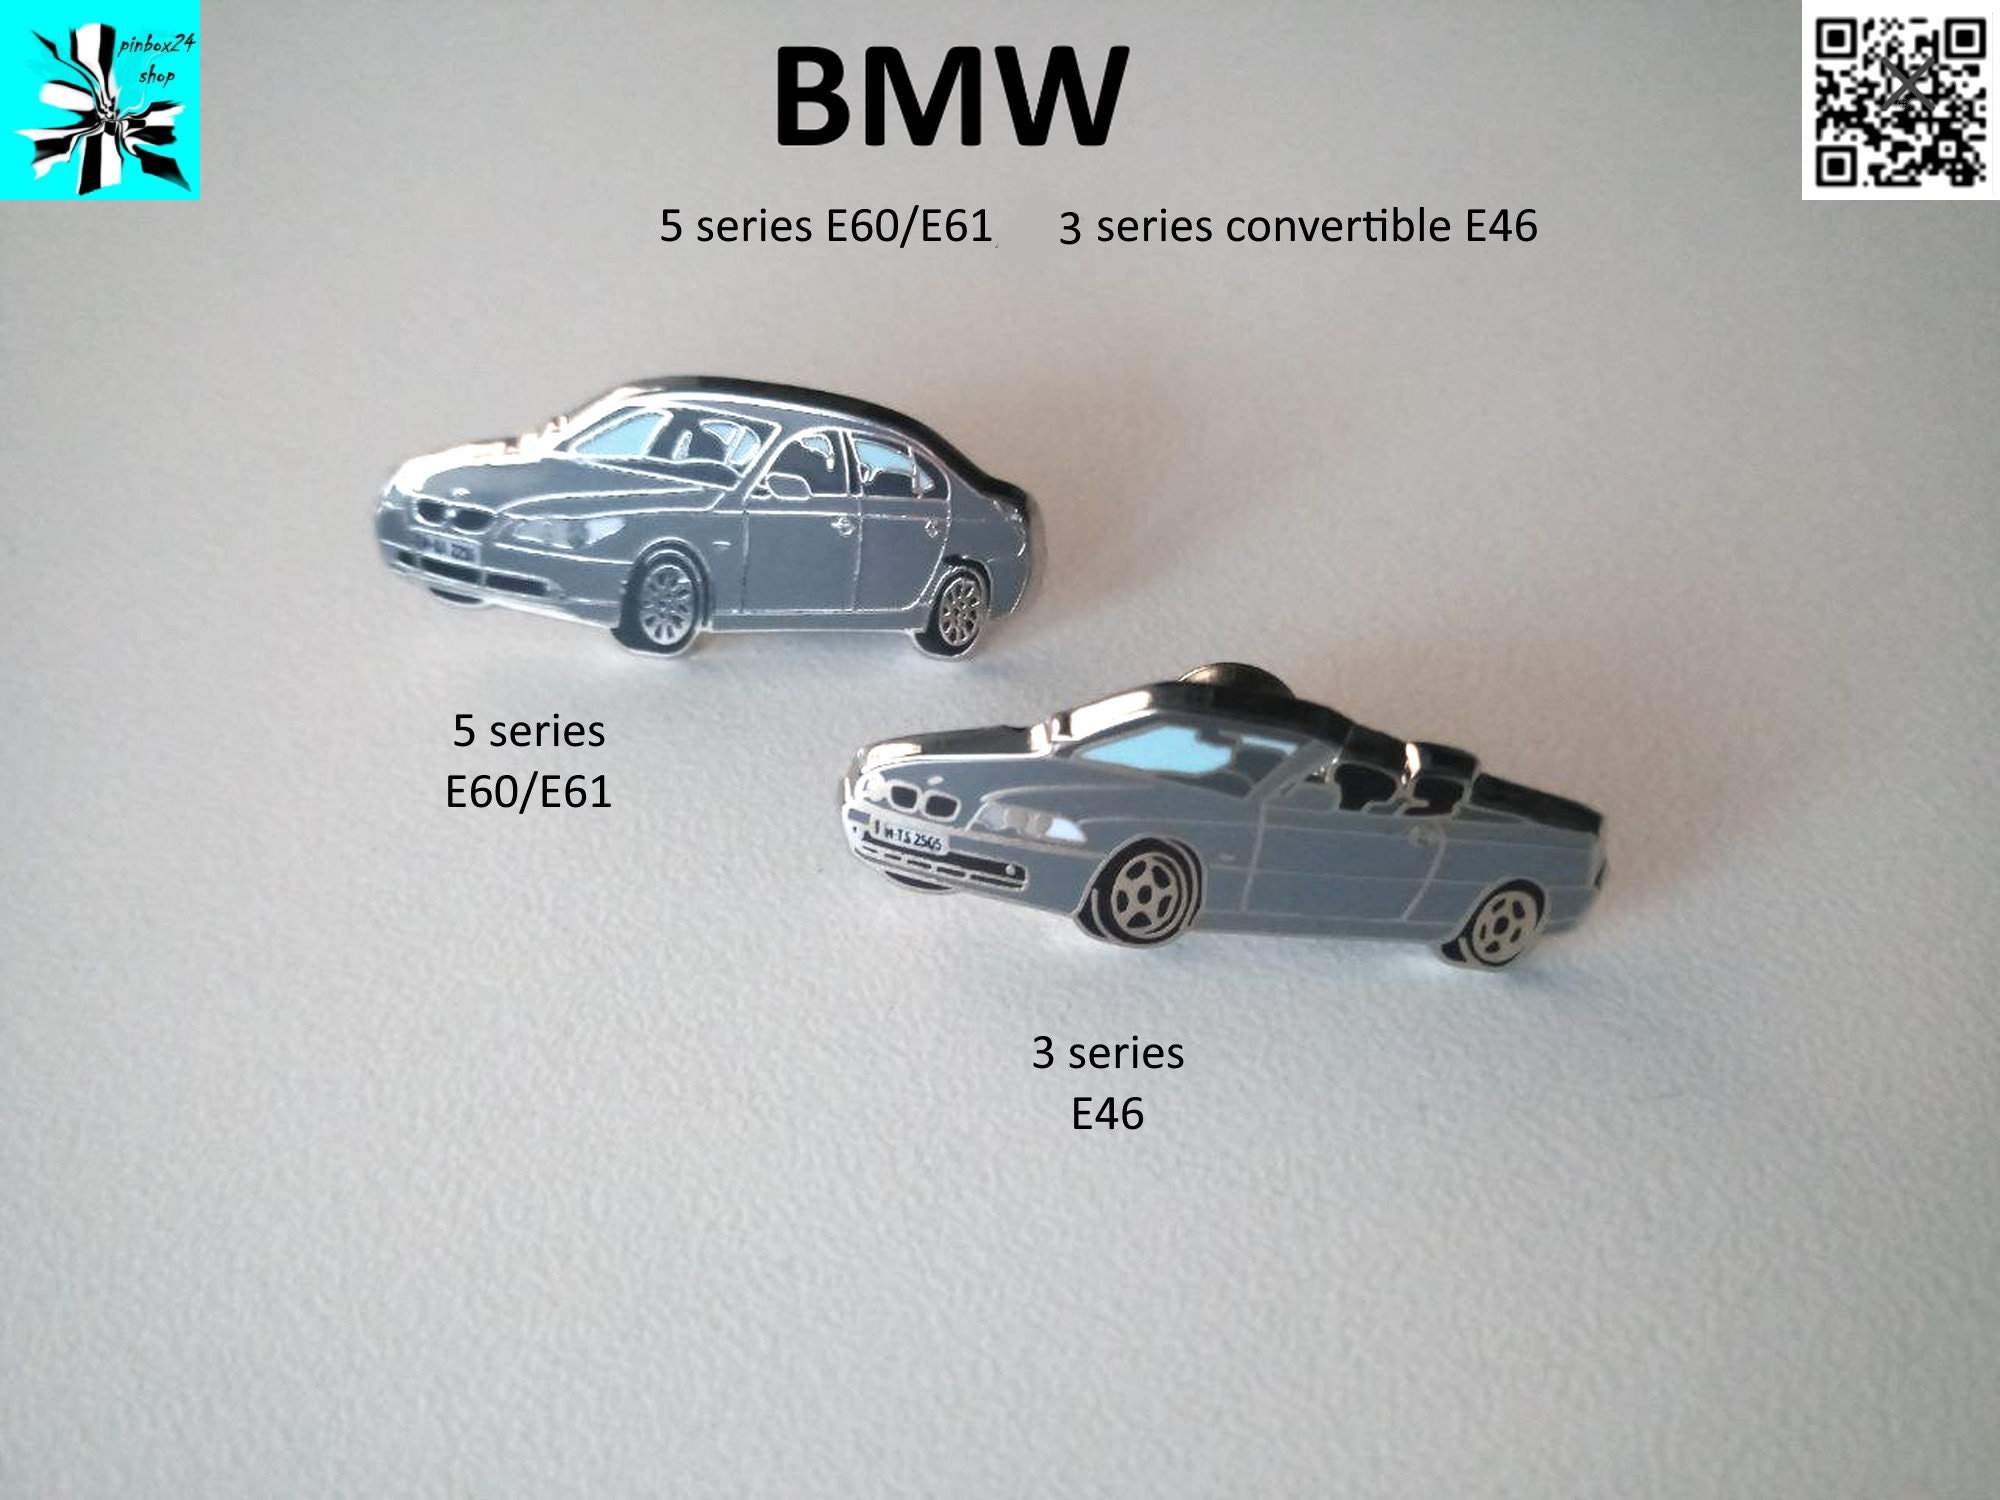 BMW E60/E61 Getränkehalter - .de